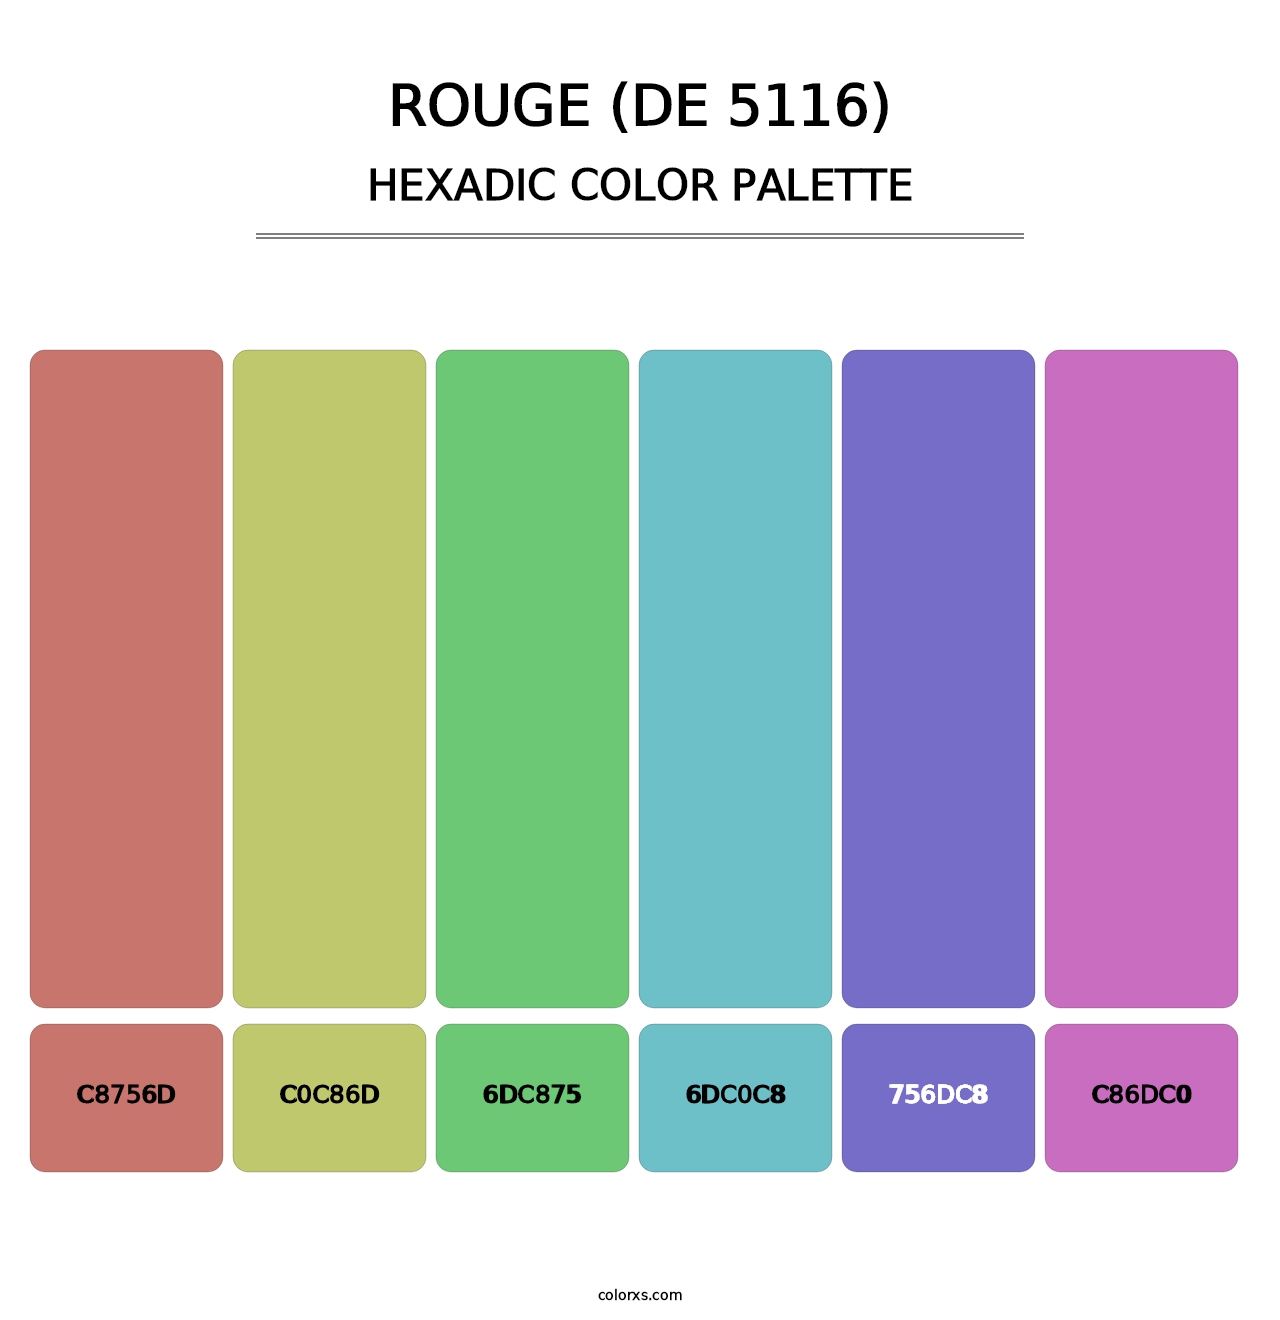 Rouge (DE 5116) - Hexadic Color Palette